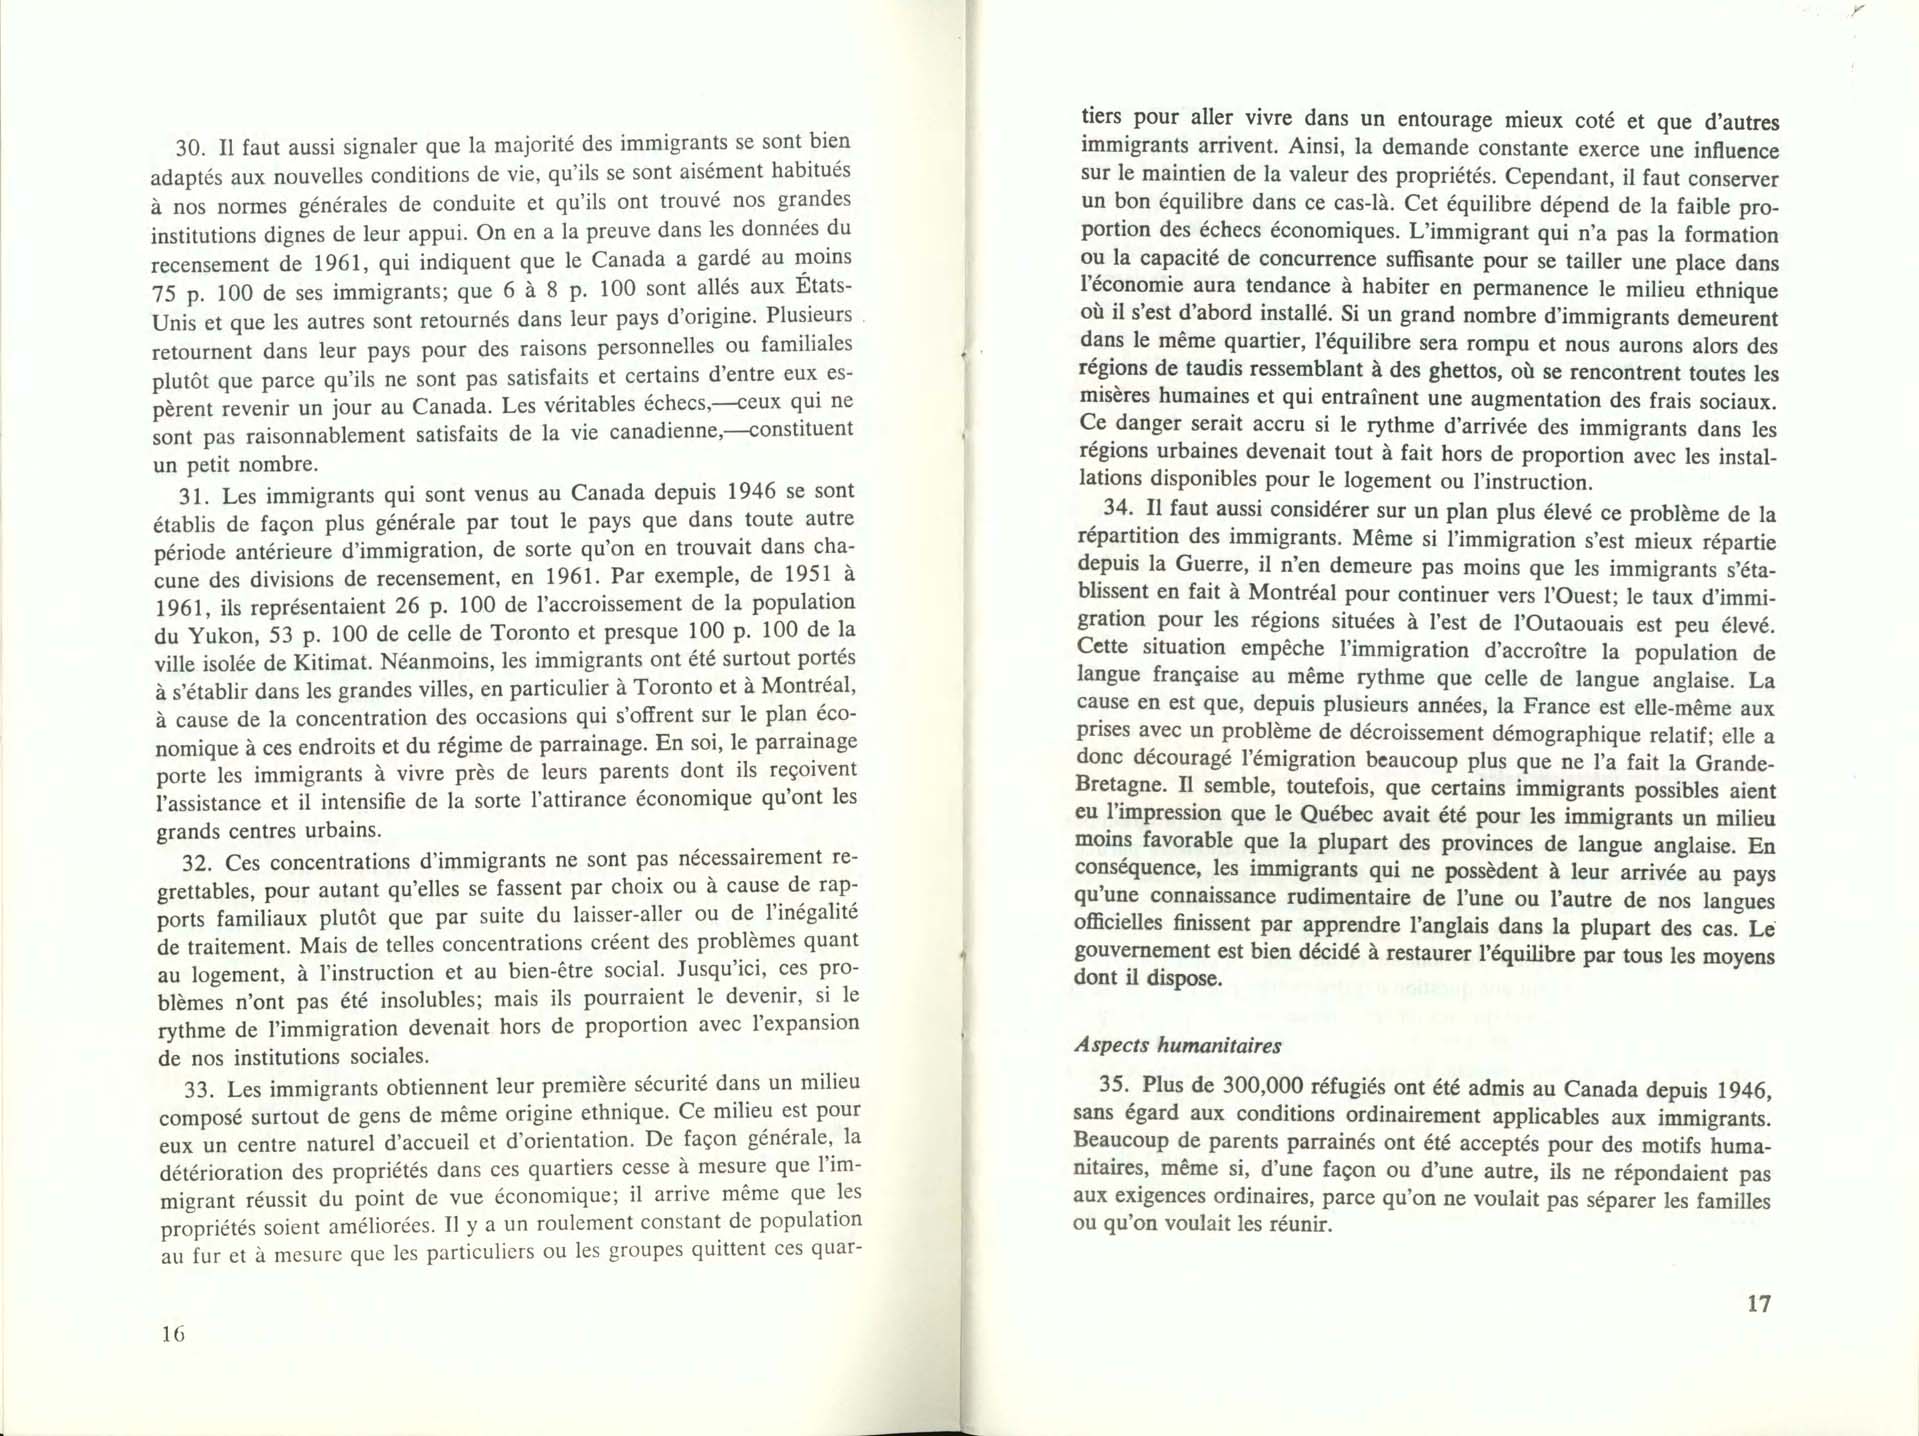 Page 16, 17 Livre Blanc sur l’immigration, 1966